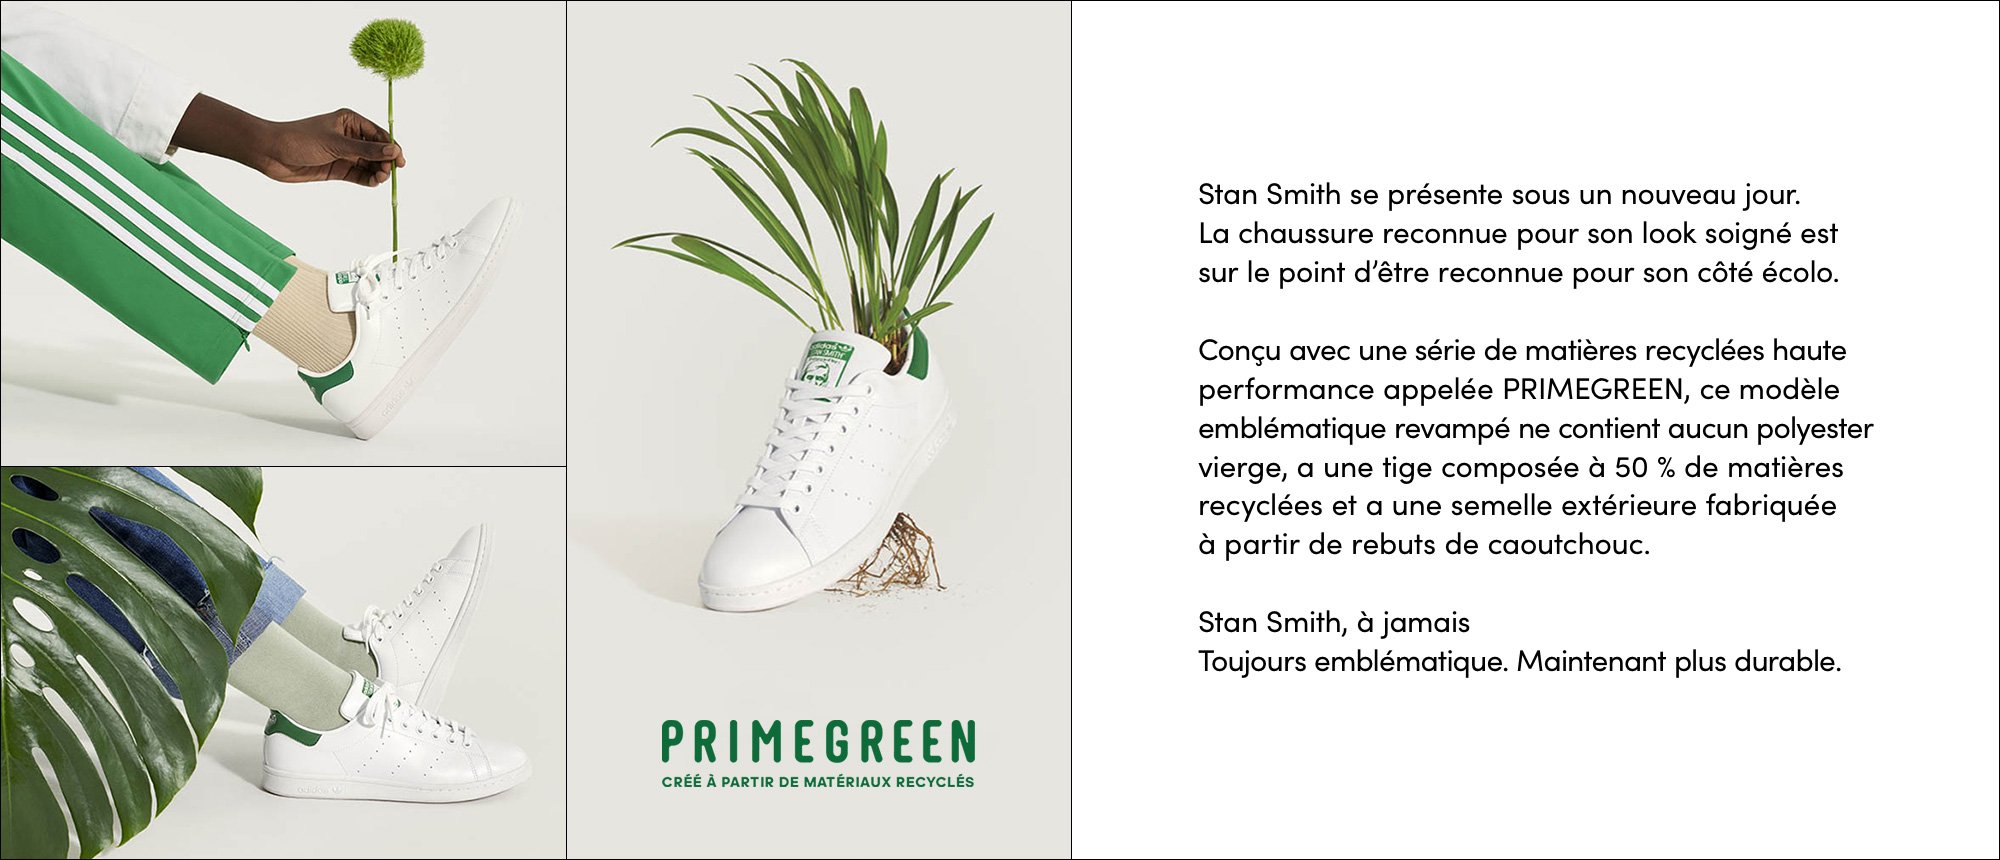 adidas Stan Smith Primegreen